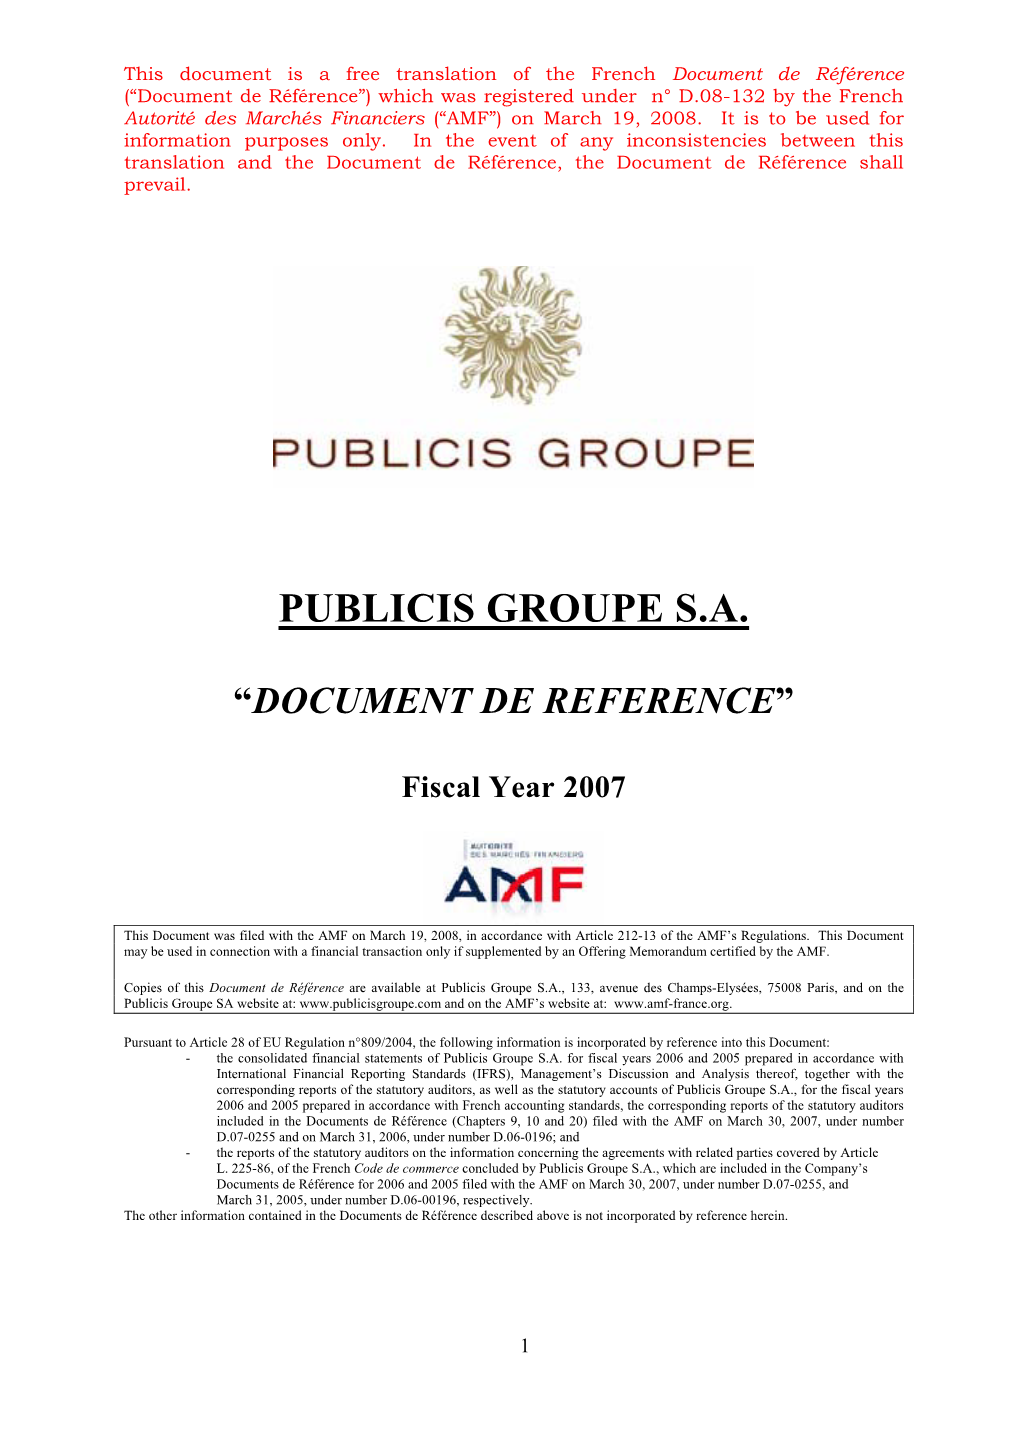 Publicis Groupe S.A